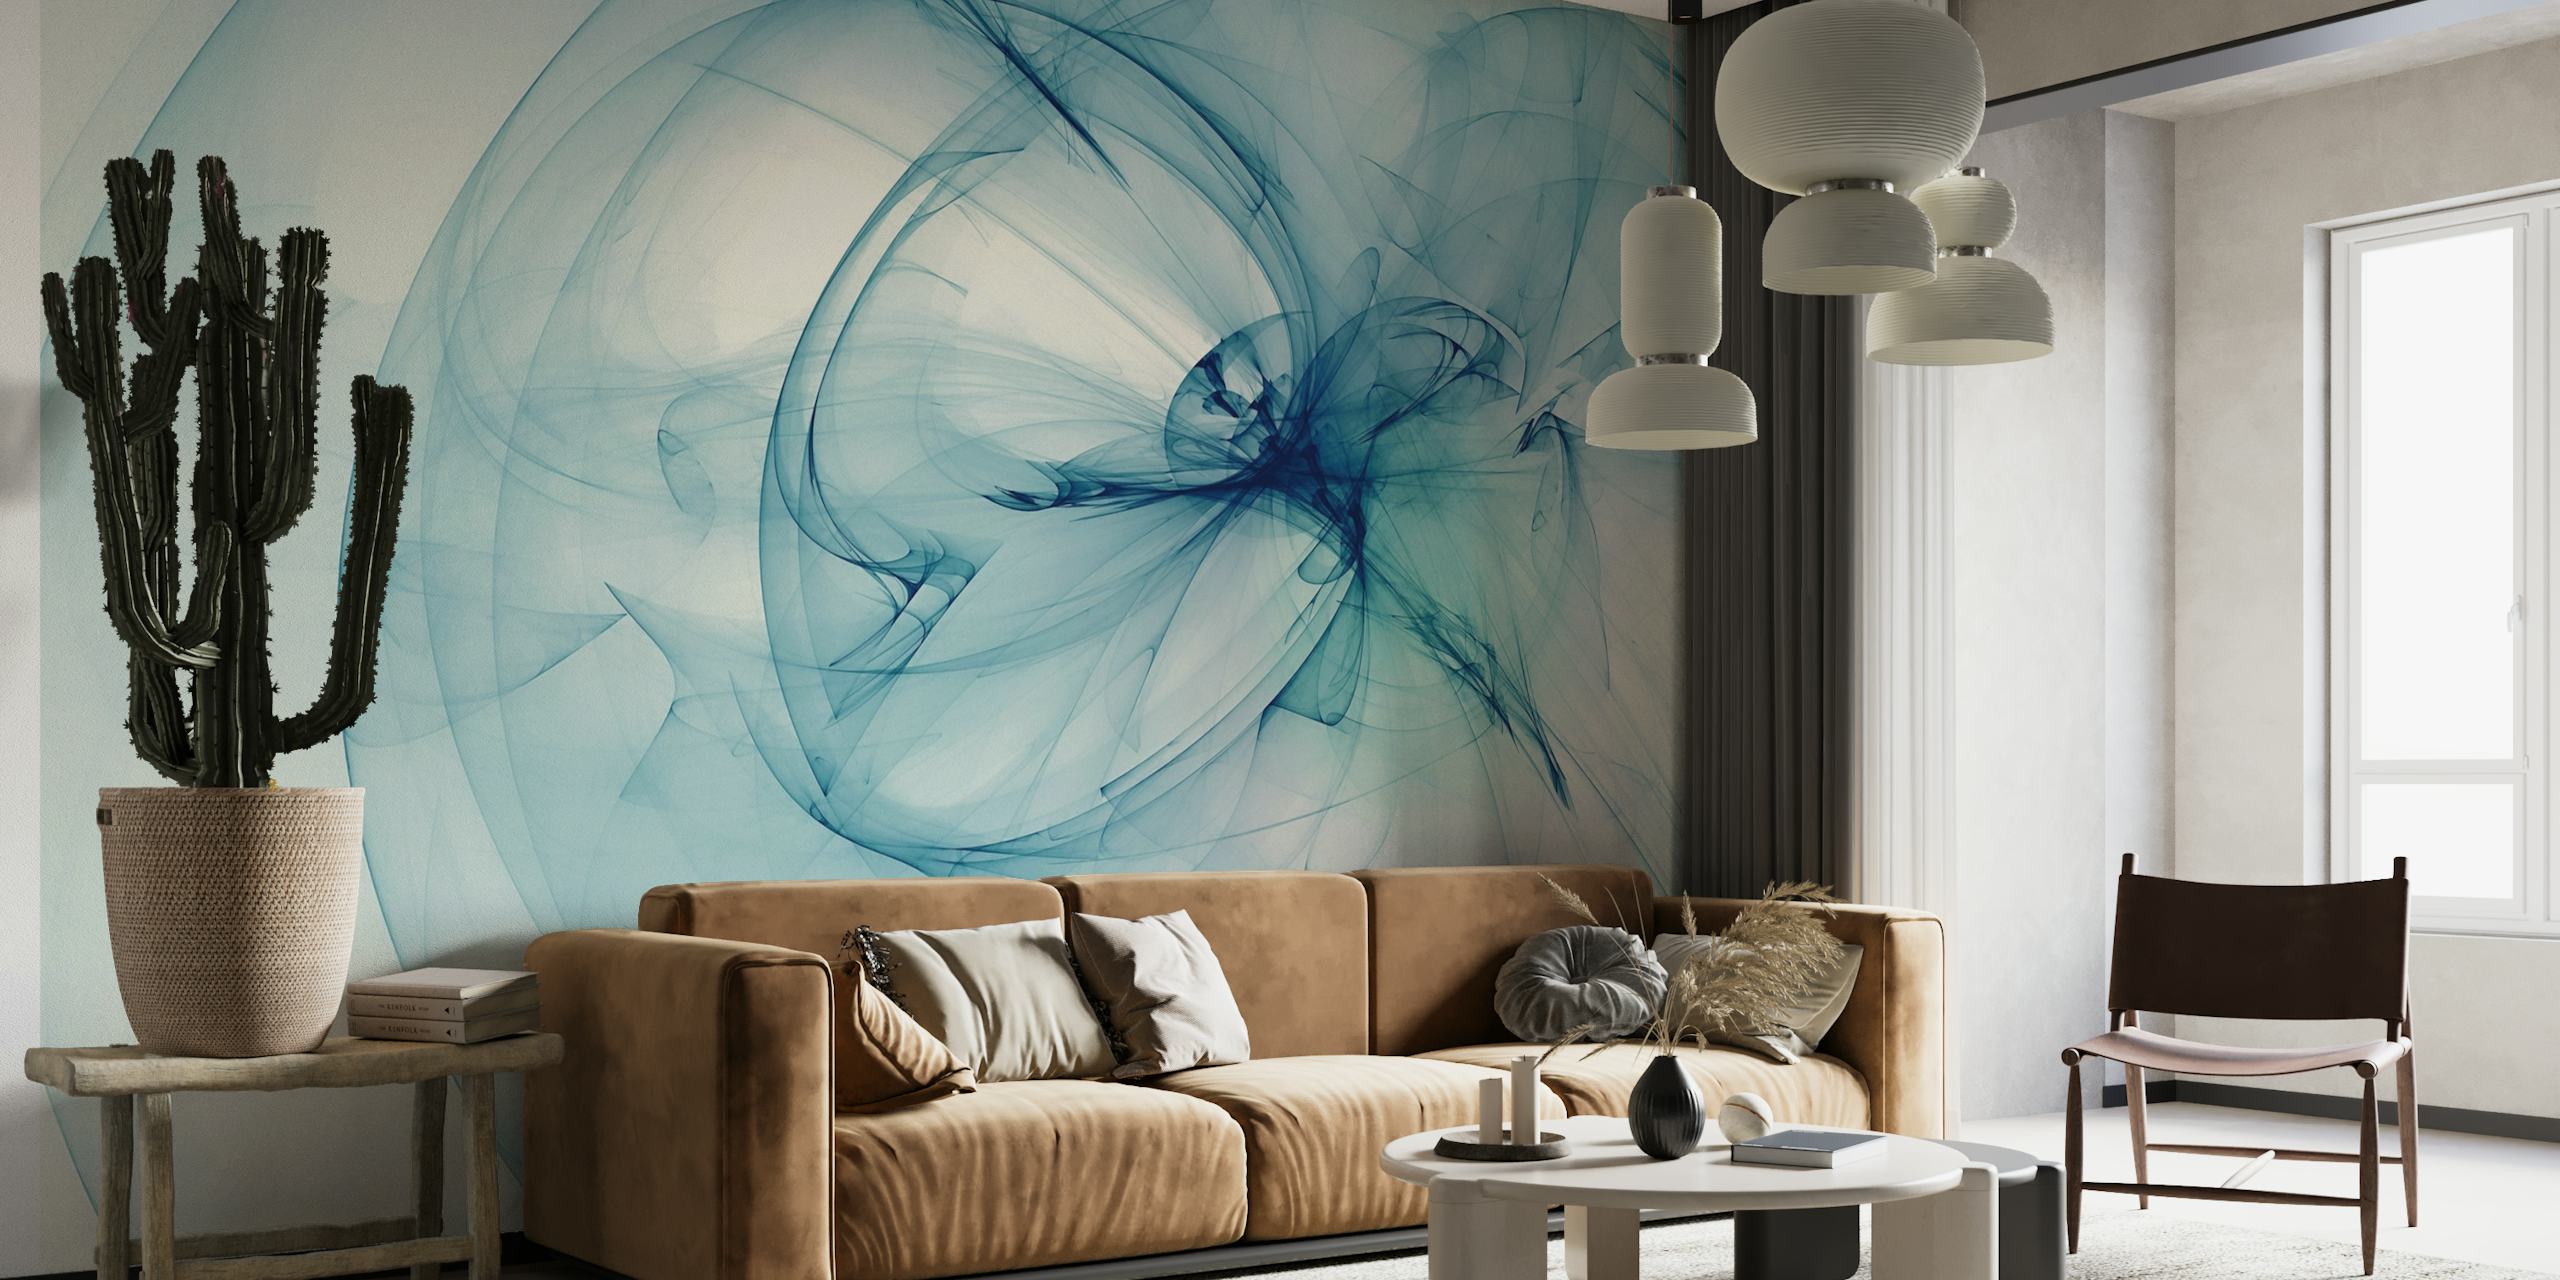 Design abstrato de mural de parede em forma de fumaça em azul claro, transmitindo serenidade e elegância